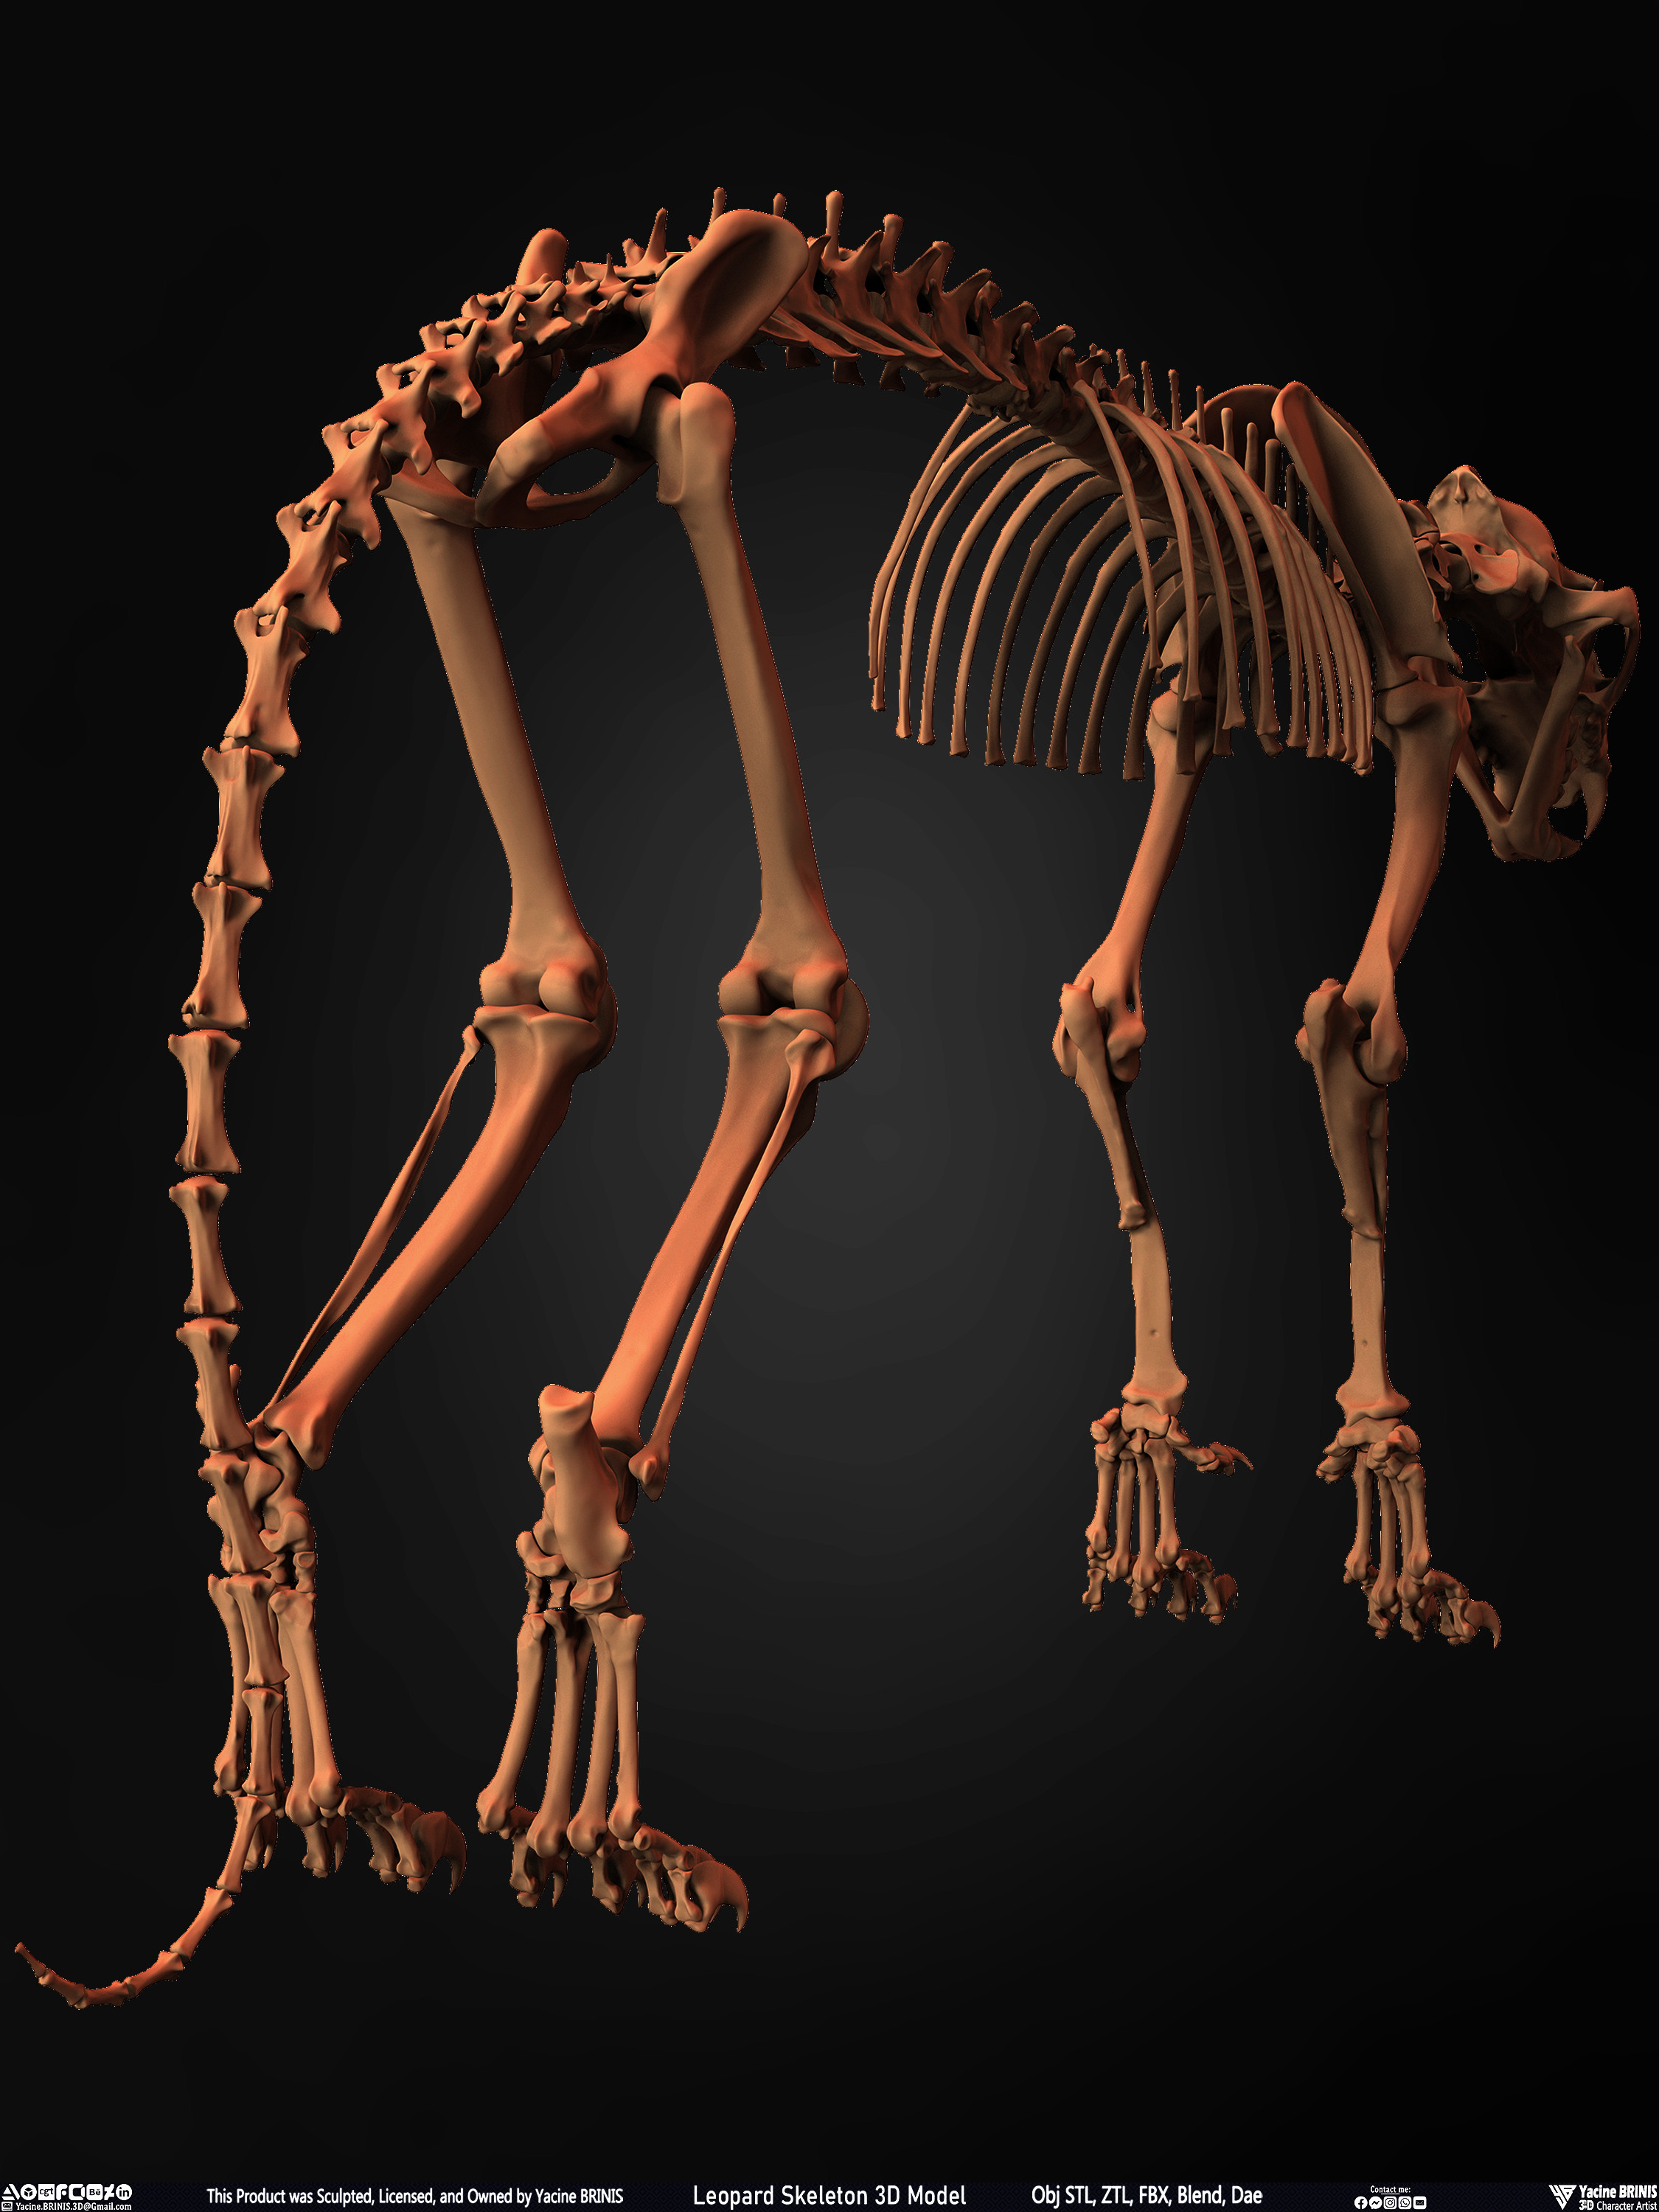 Leopard Skeleton 3D Model Sculpted By Yacine BRINIS 014